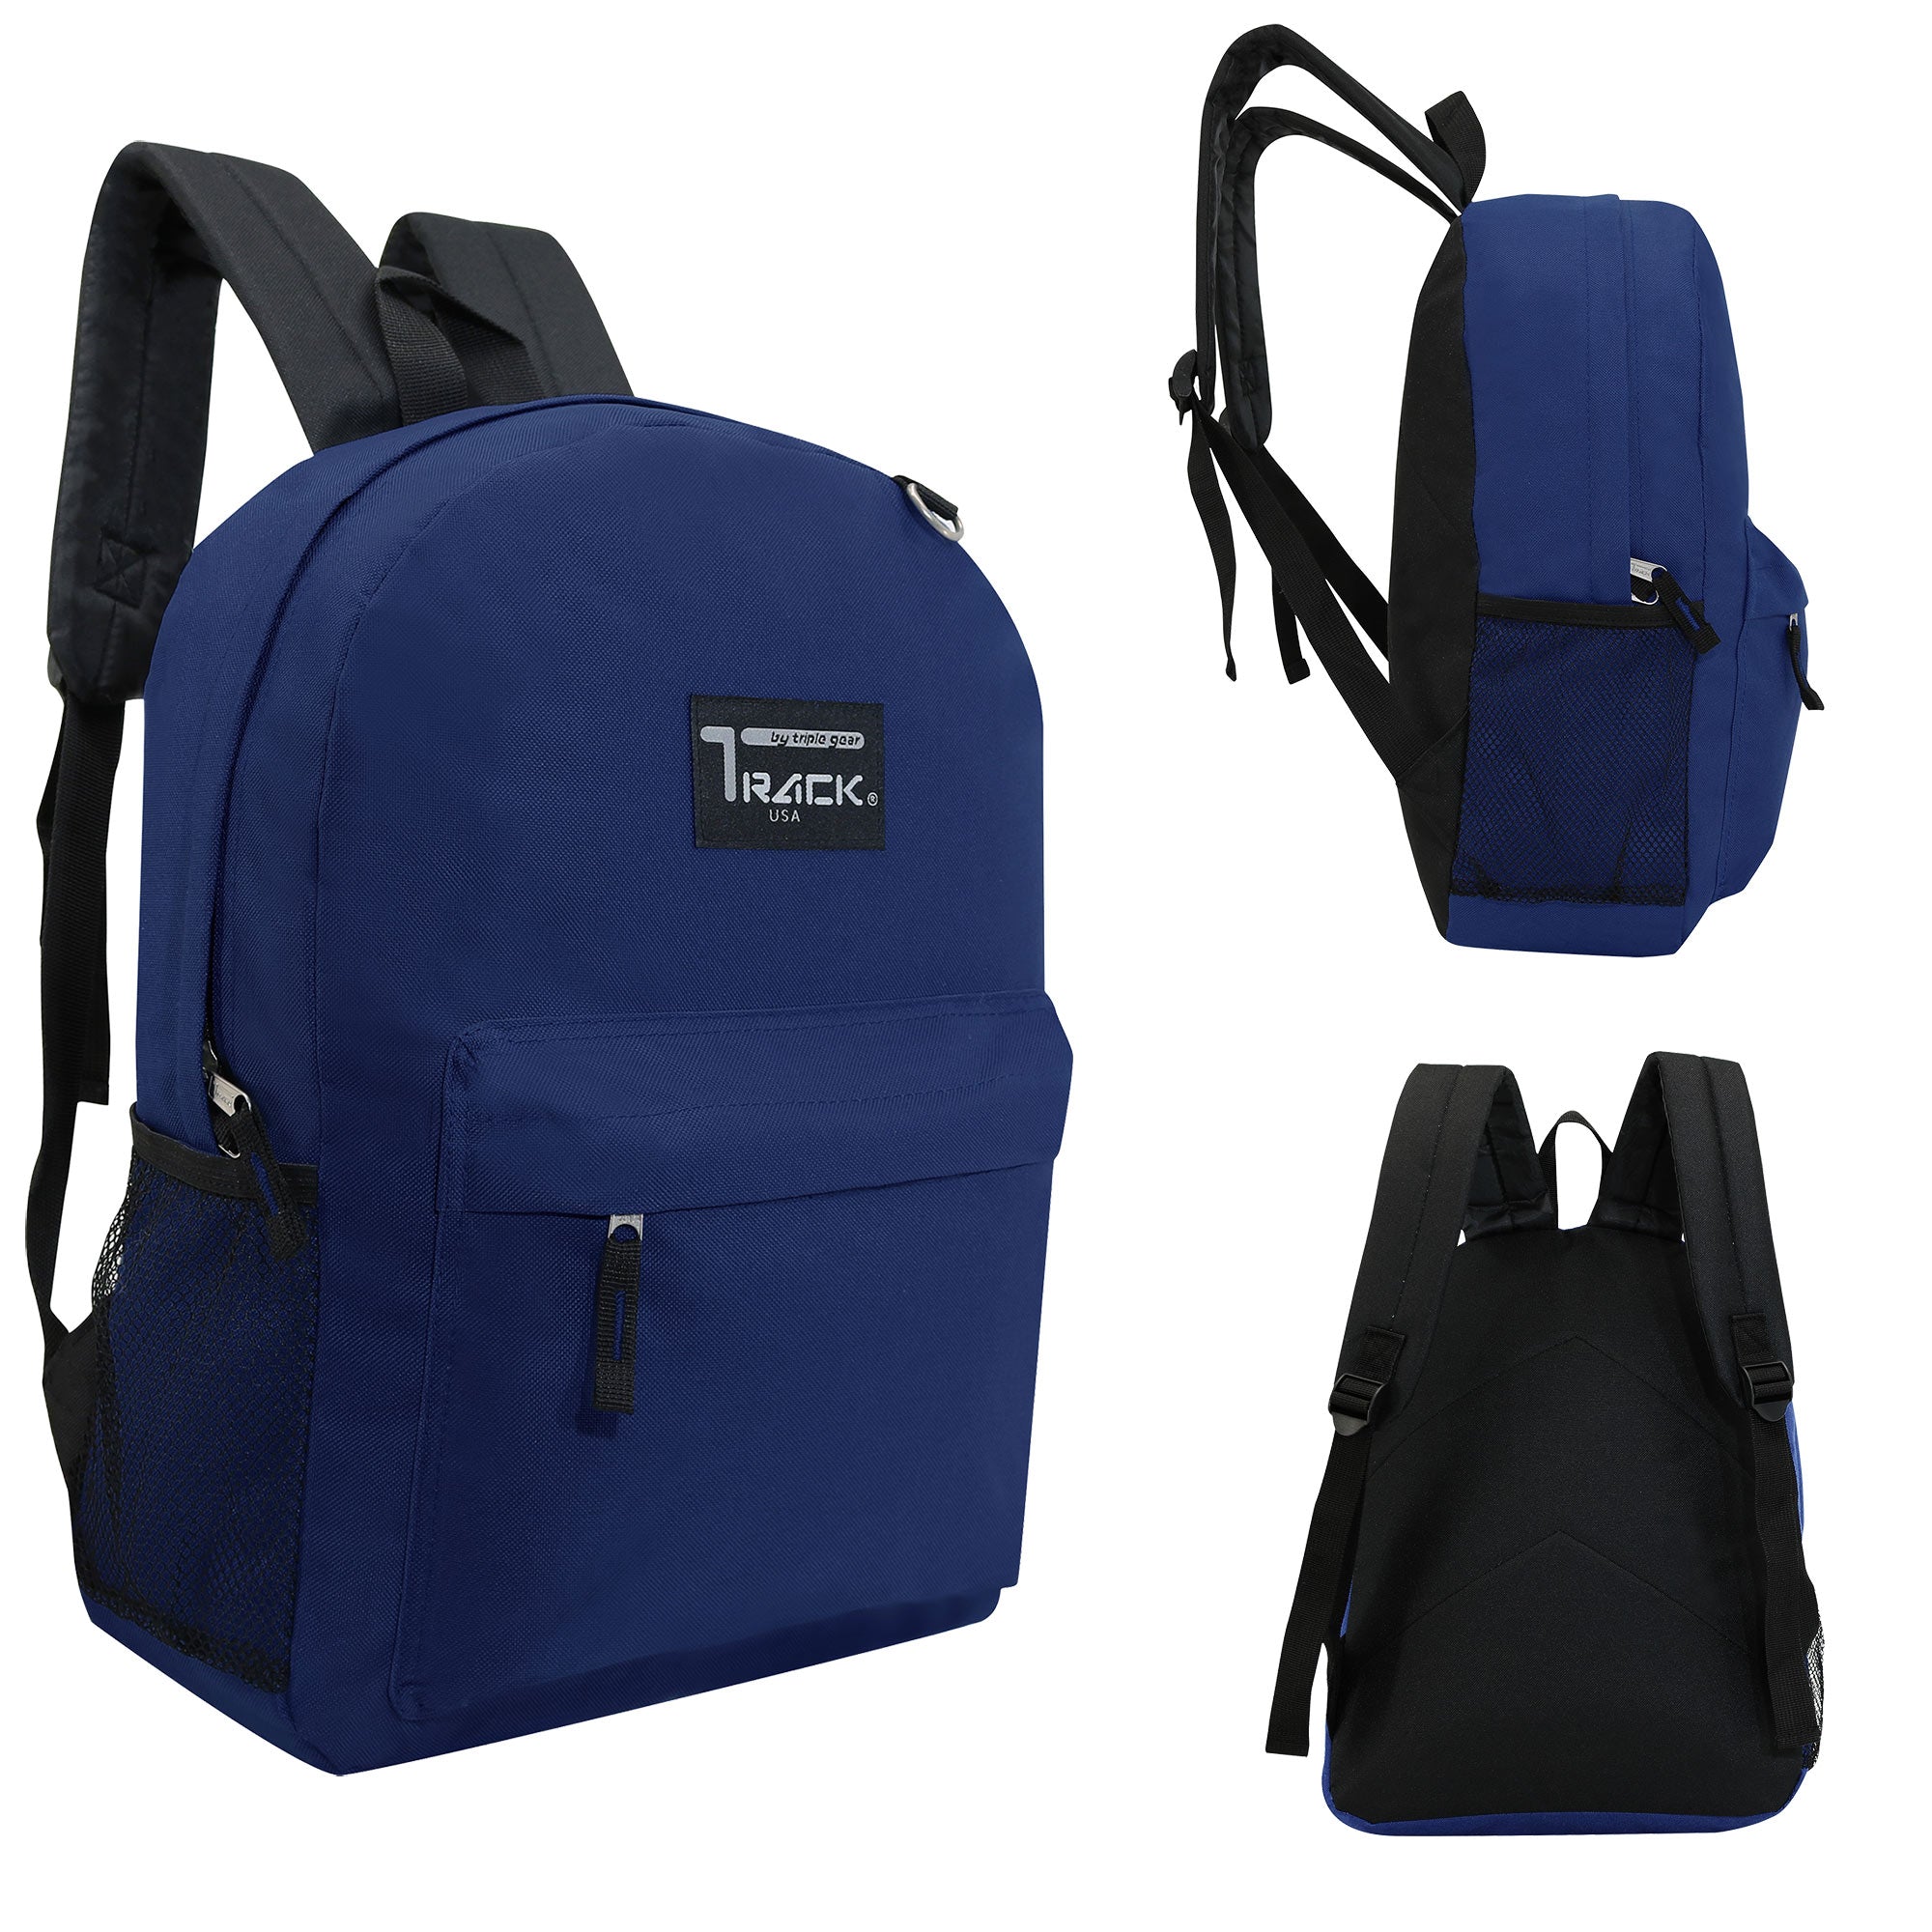 17" Kids Wholesale Backpacks In Navy Blue | Bulk Case of 24 Bookbags